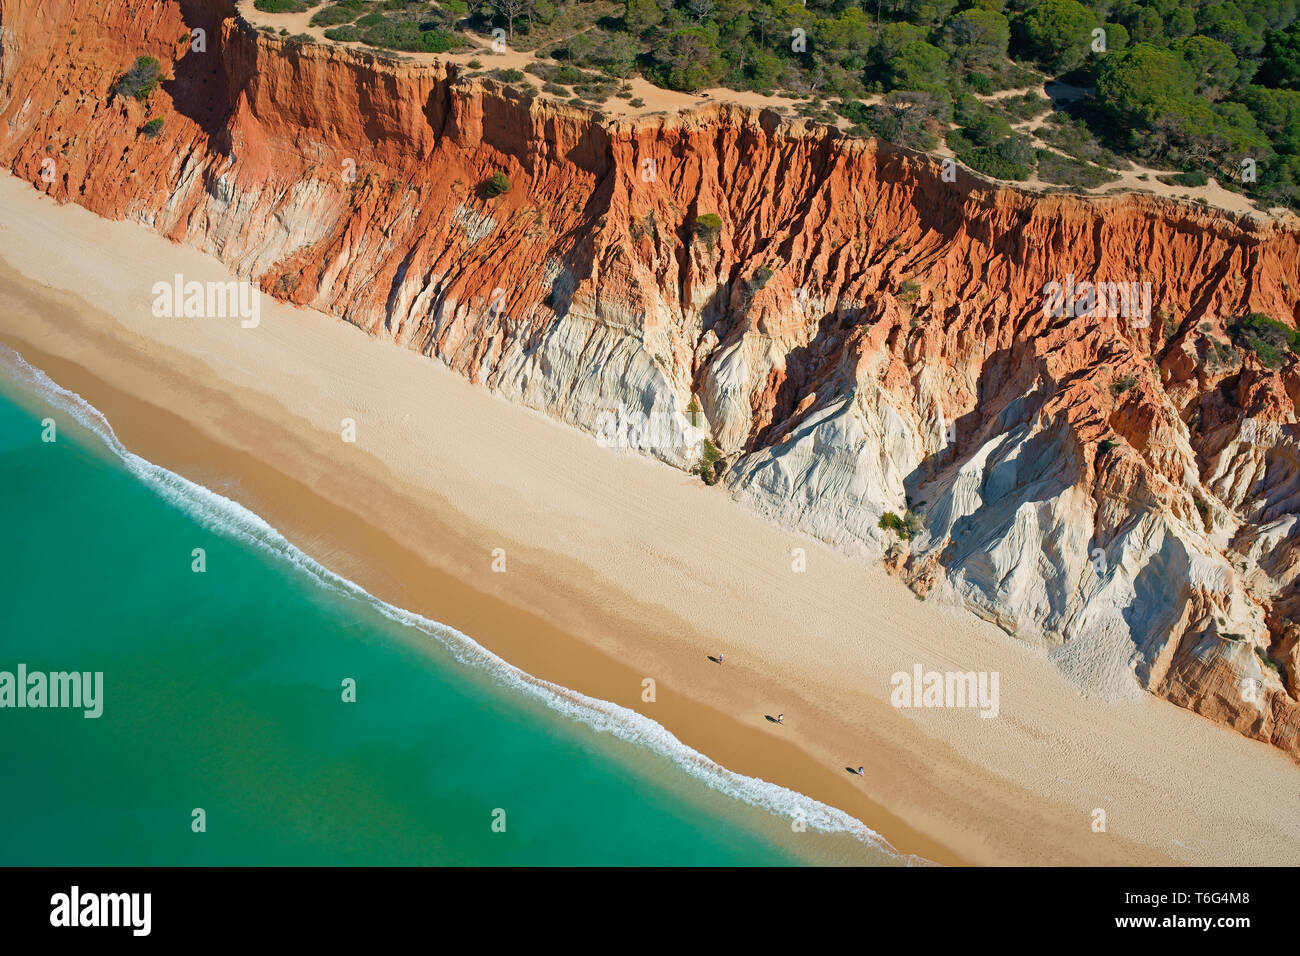 LUFTAUFNAHME. Praia da Falésia (Strand der Klippe); eine erodierte Klippe am Meer mit bunten Schichten. Albufeira, Algarve, Portugal. Stockfoto